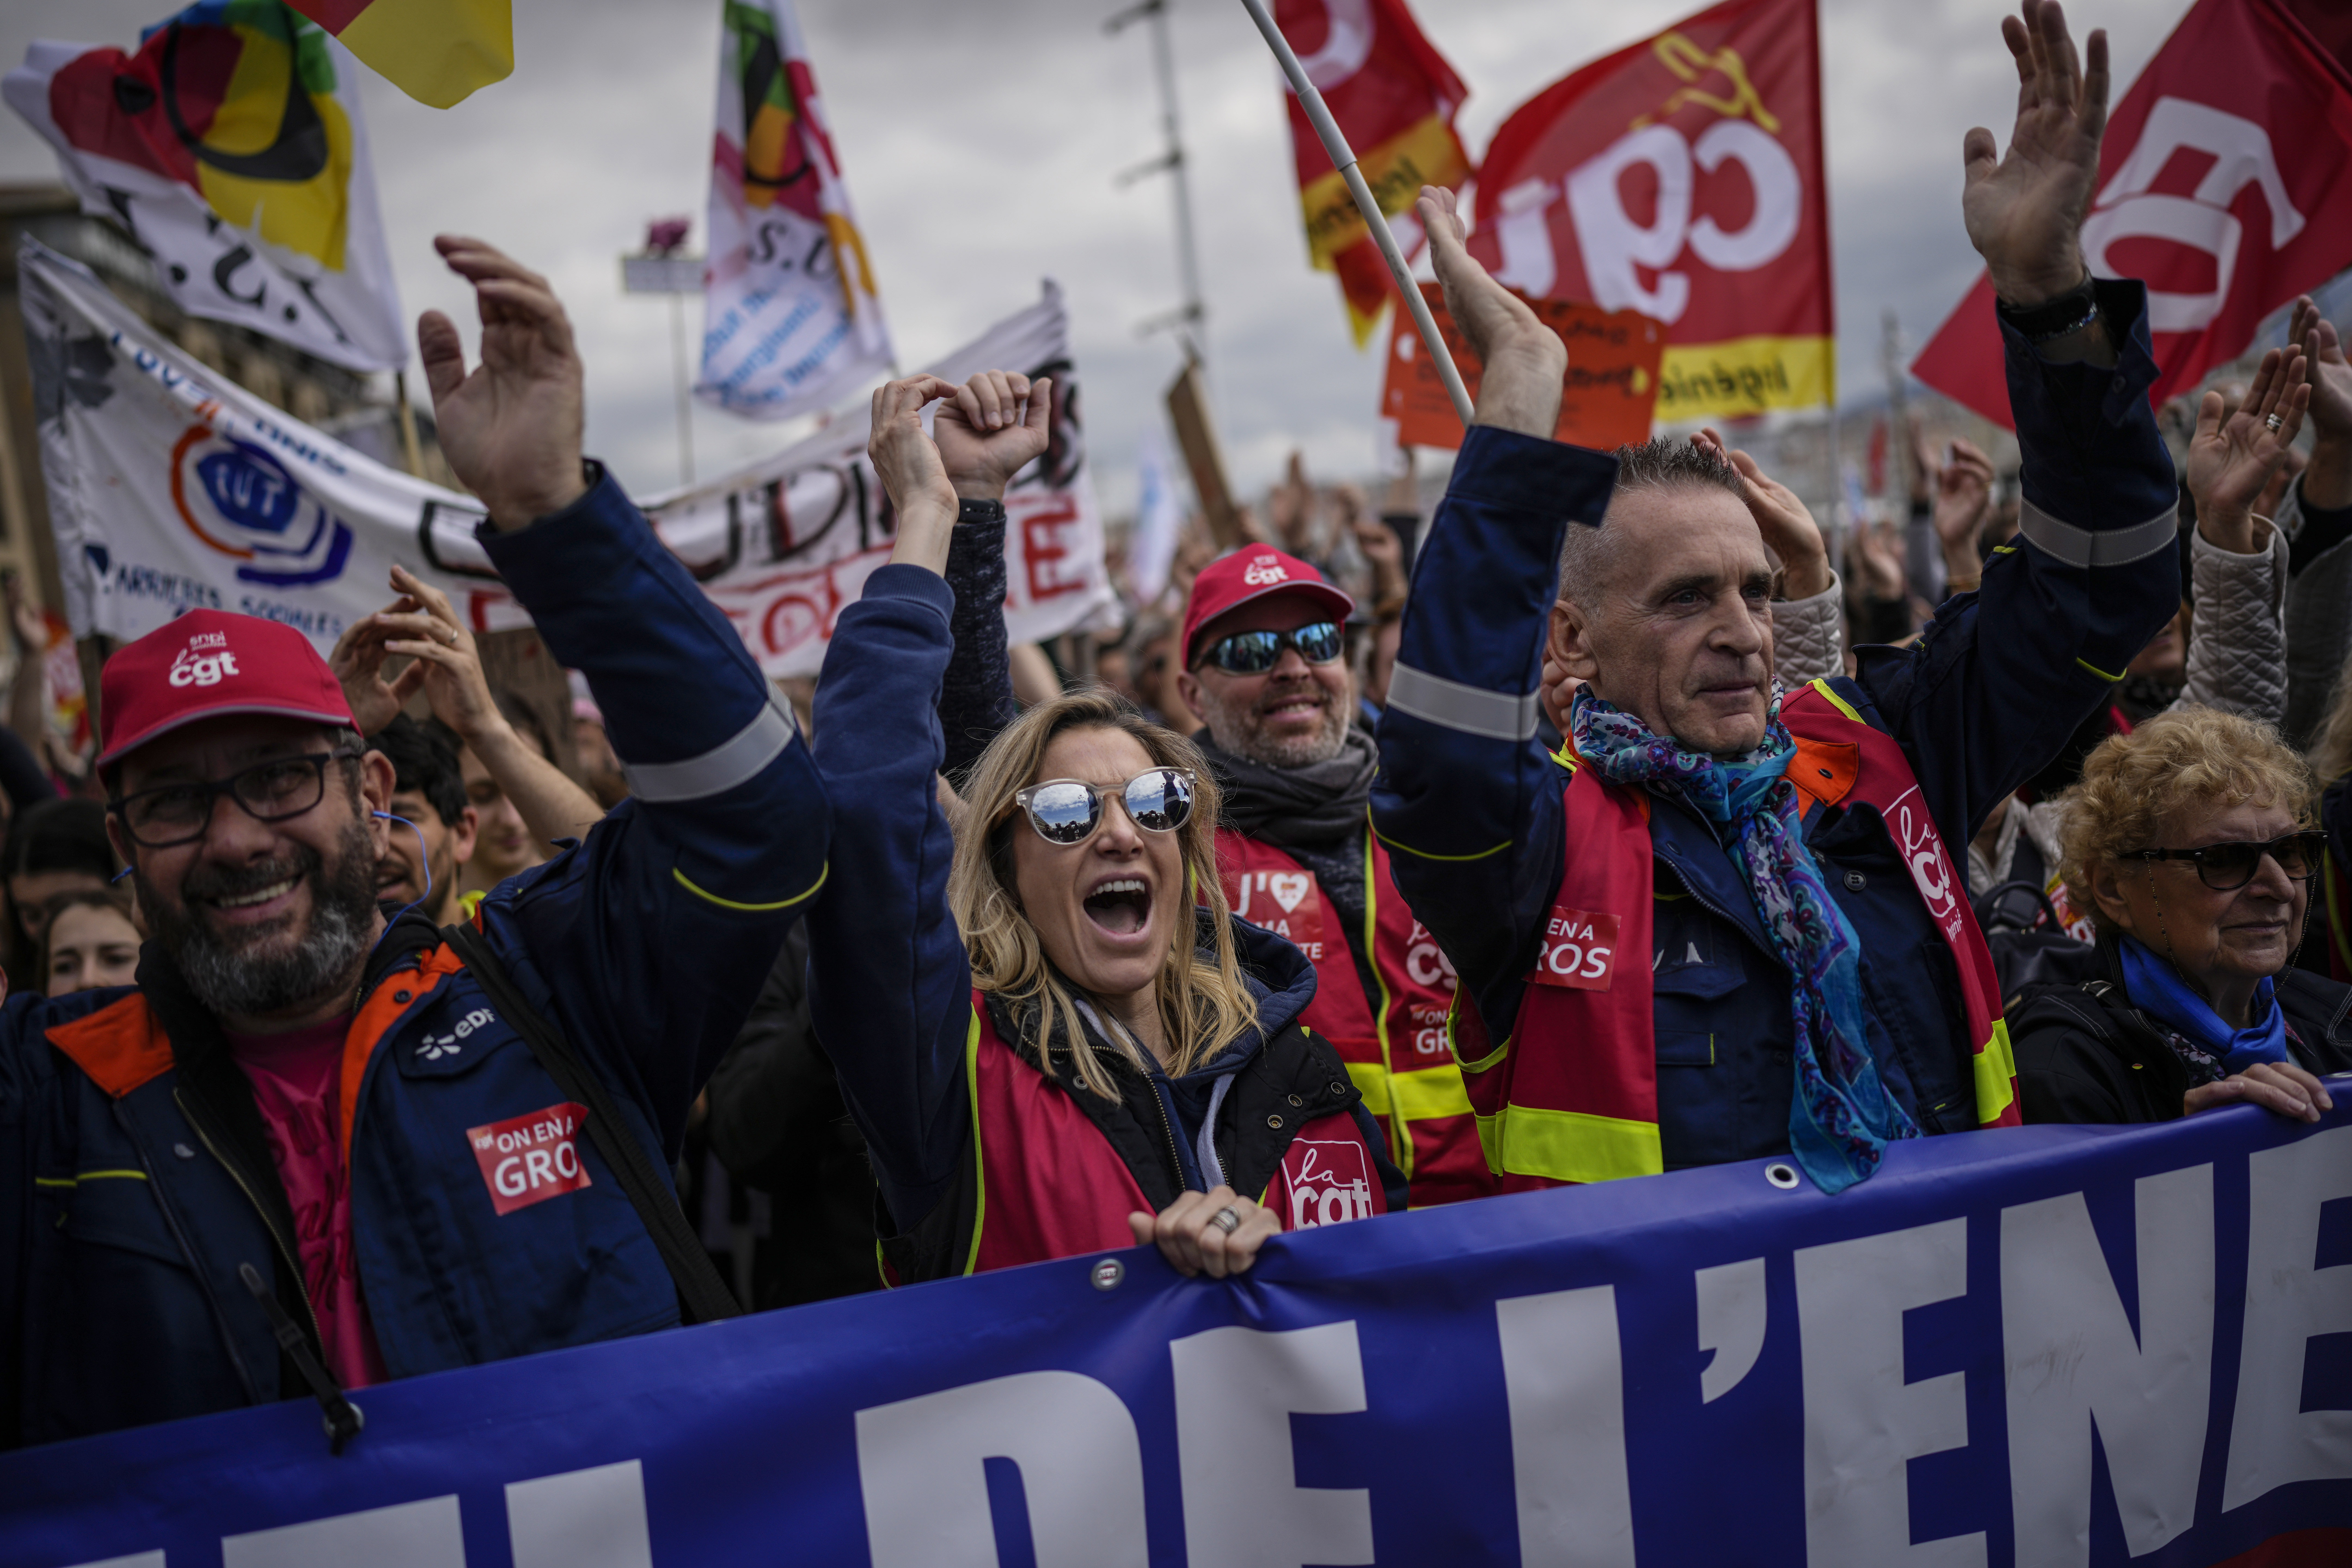 Reforma de las pensiones en Francia: tras otra jornada marcada por la violencia, los sindicatos anunciaron una nueva movilización